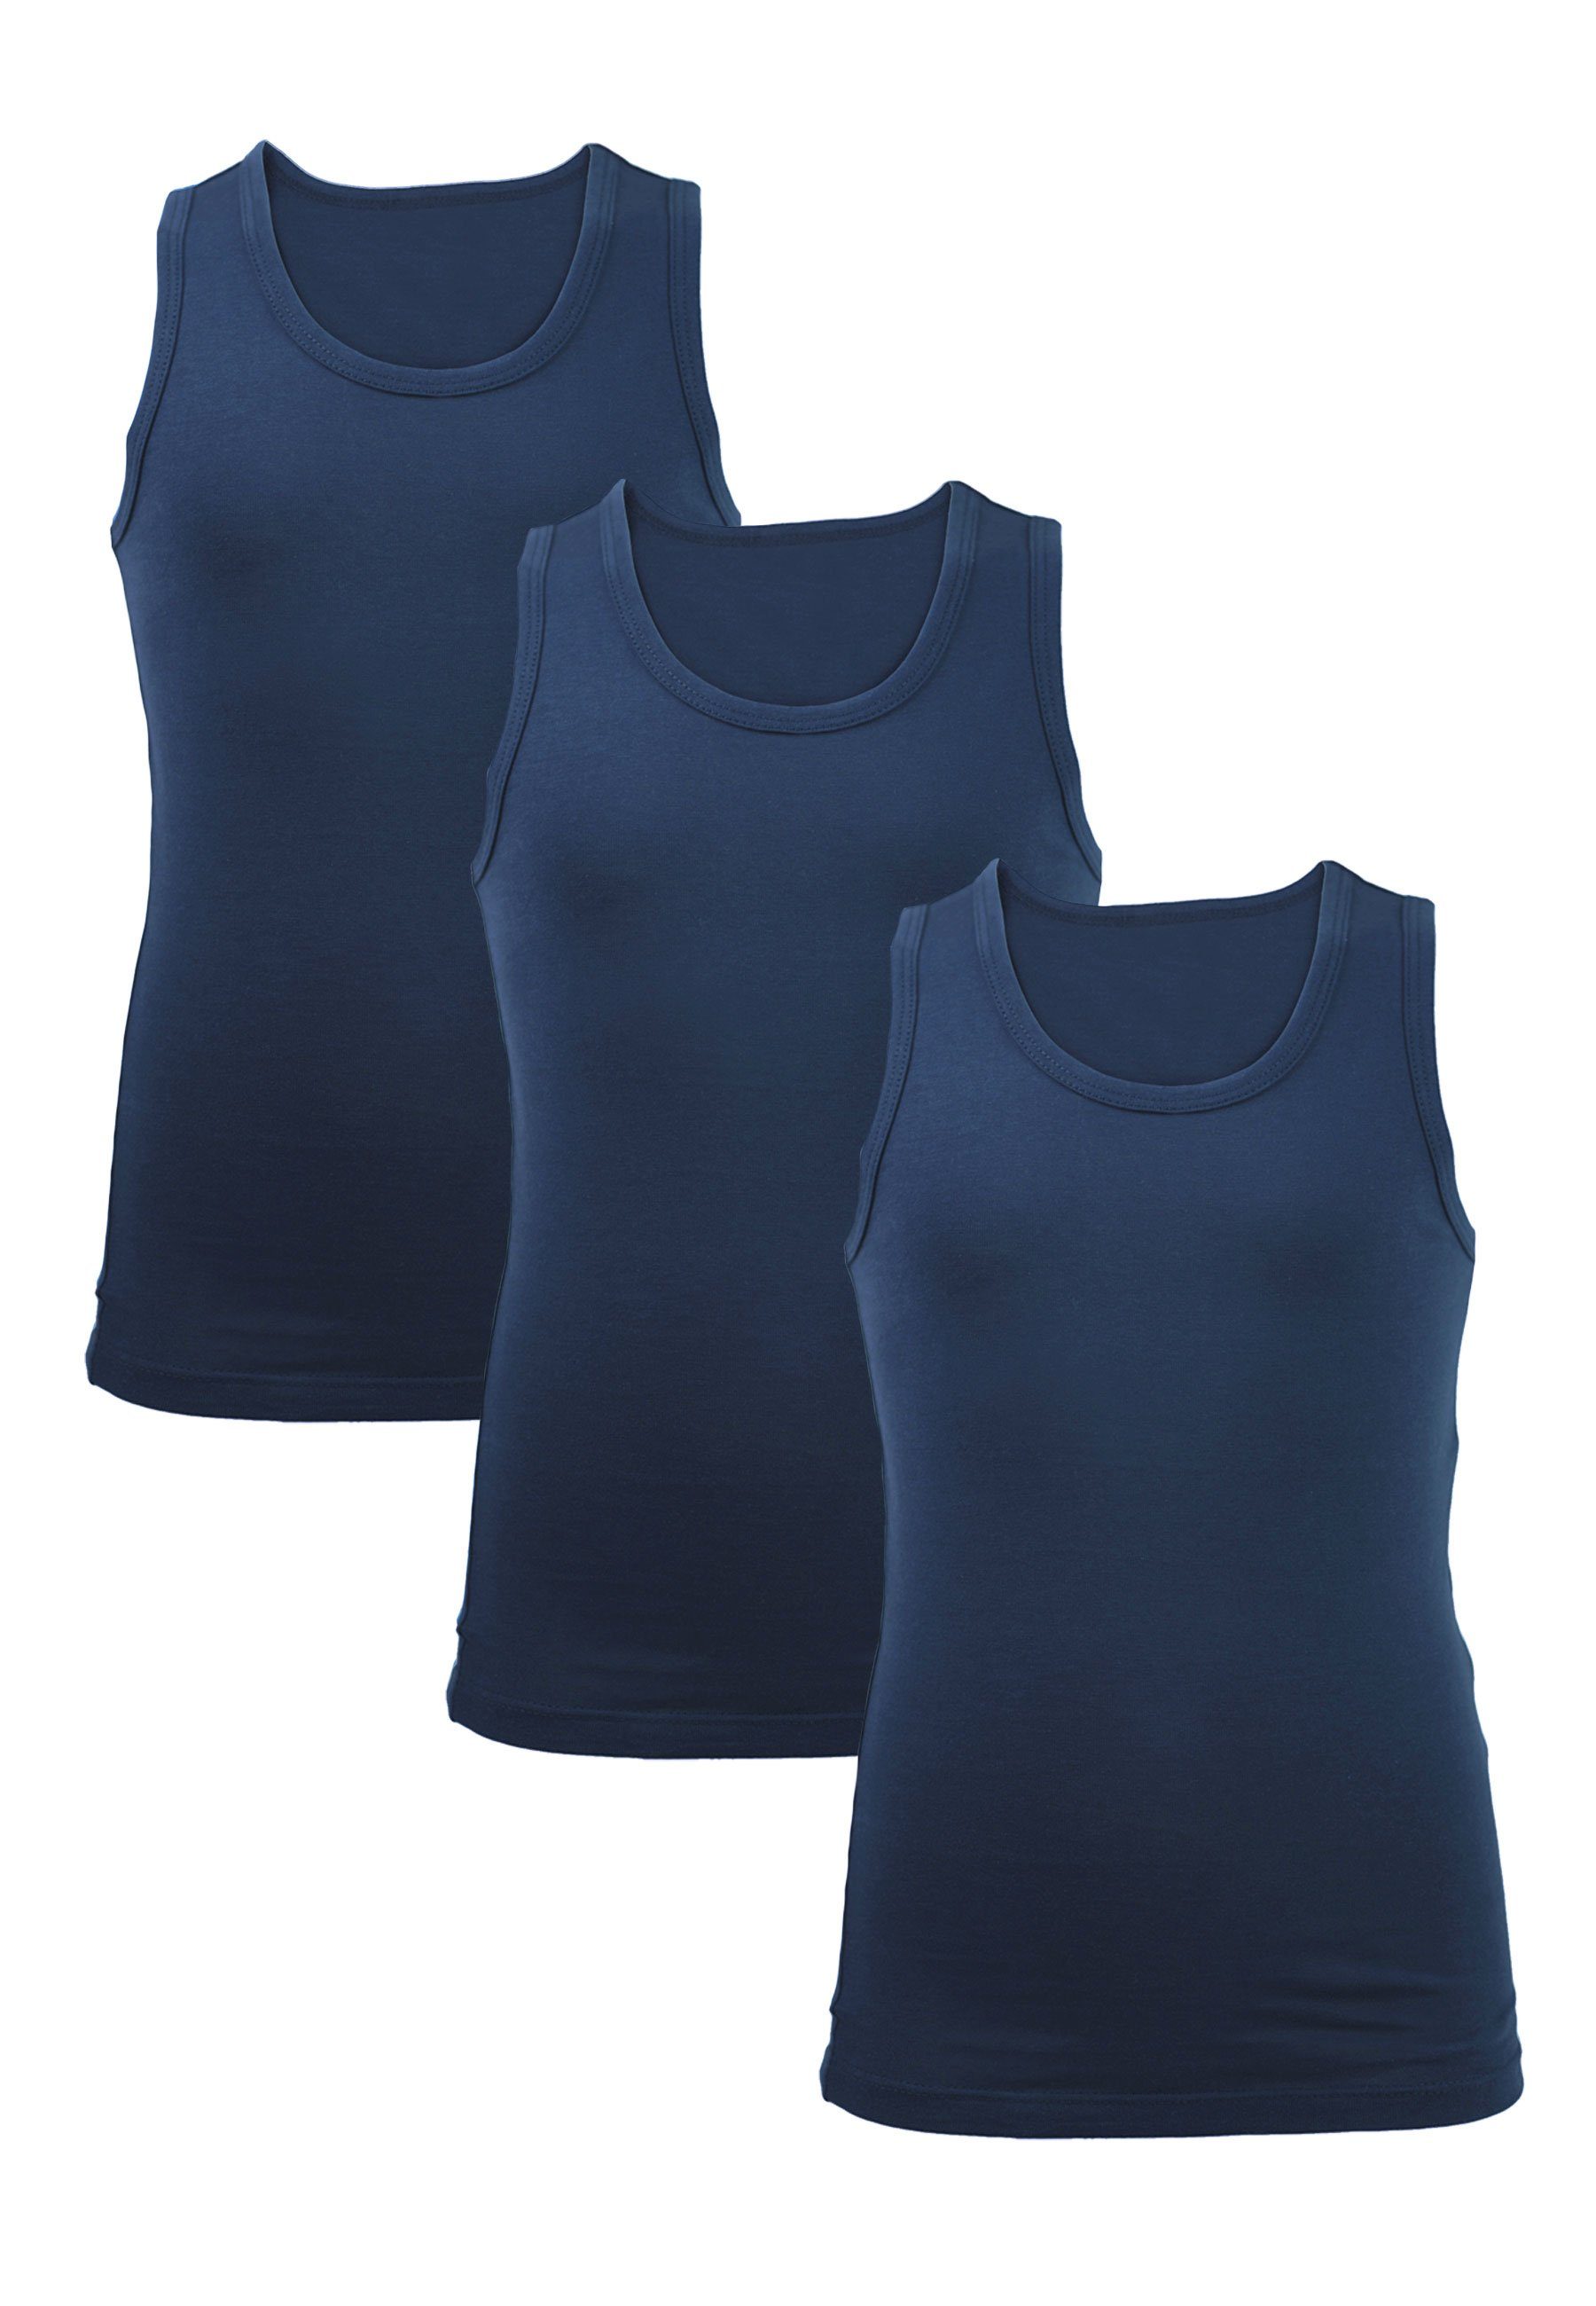 CARBURANT reiner Baumwolle für Unterhemden (3er-Pack) Pack blau 3 Jungen aus Unterhemd